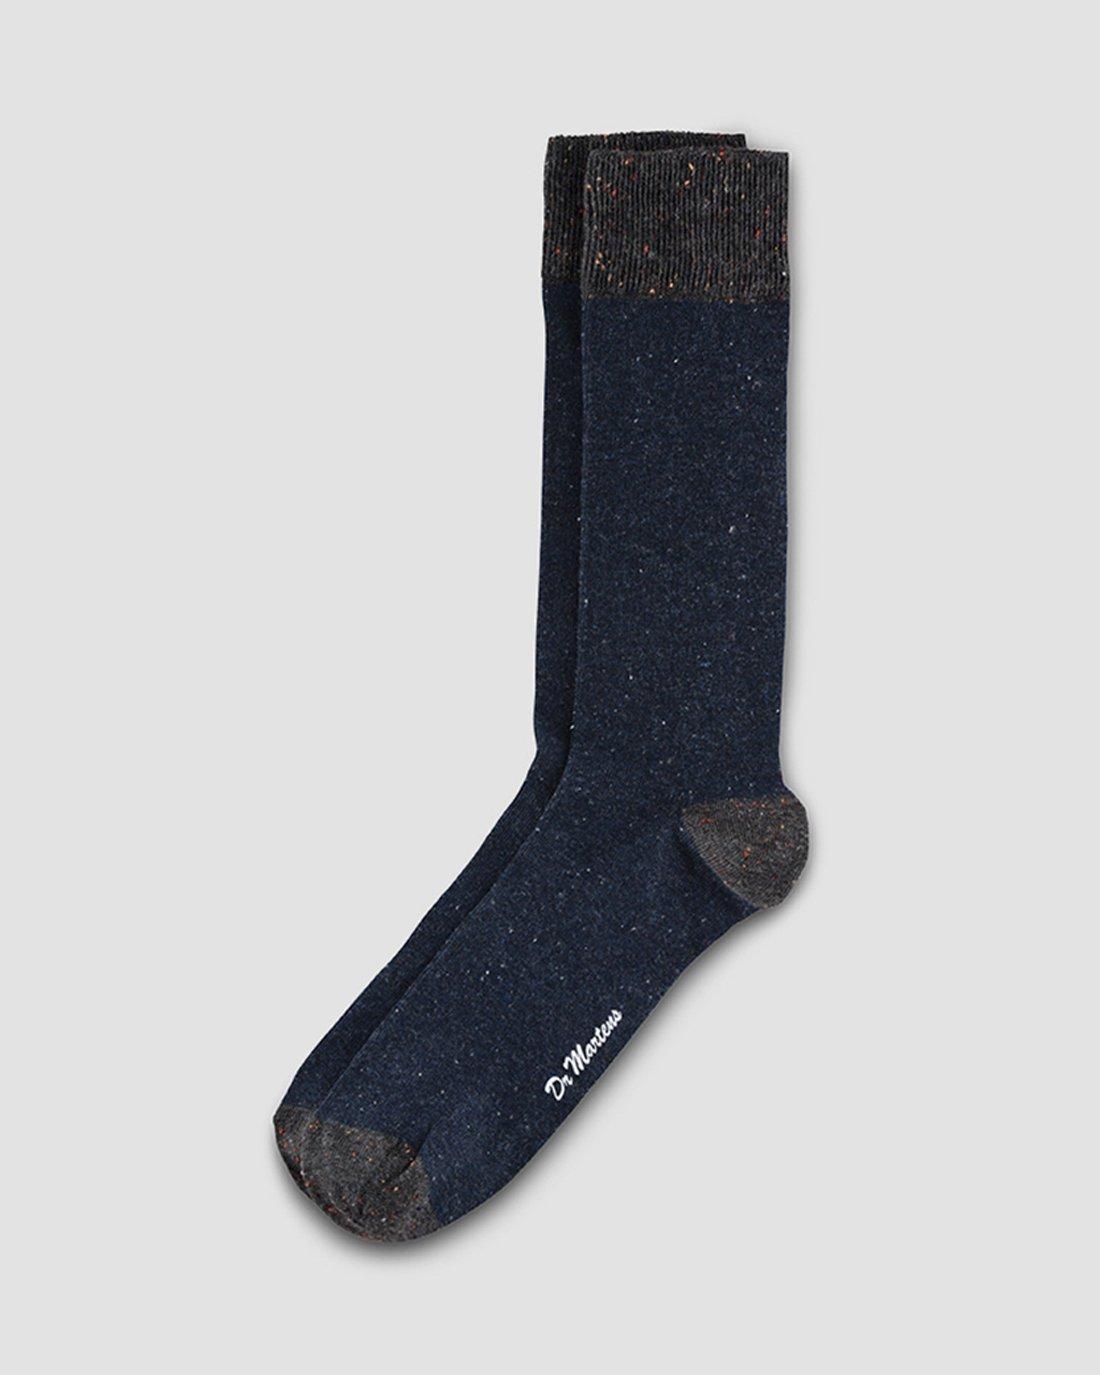 Heavy Gauge Socke in Blau+Grau